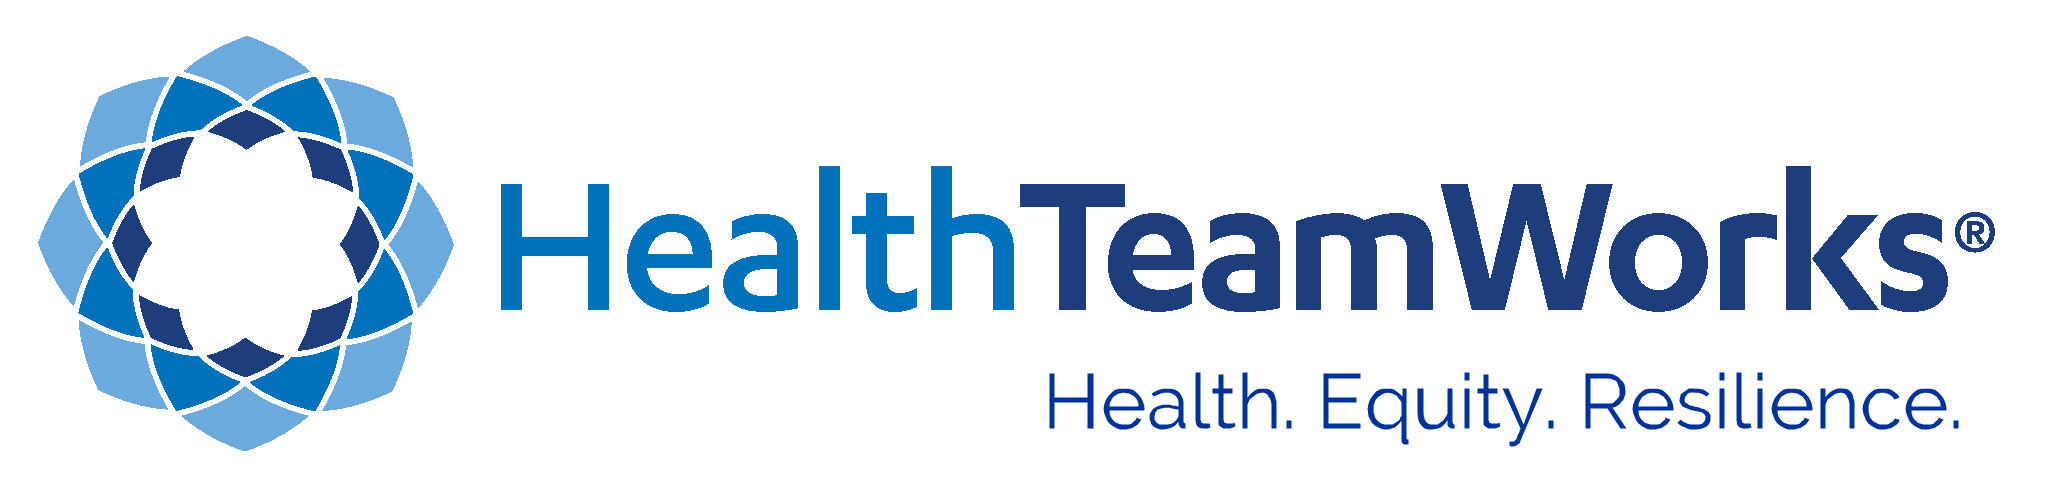 HealthTeamWorks